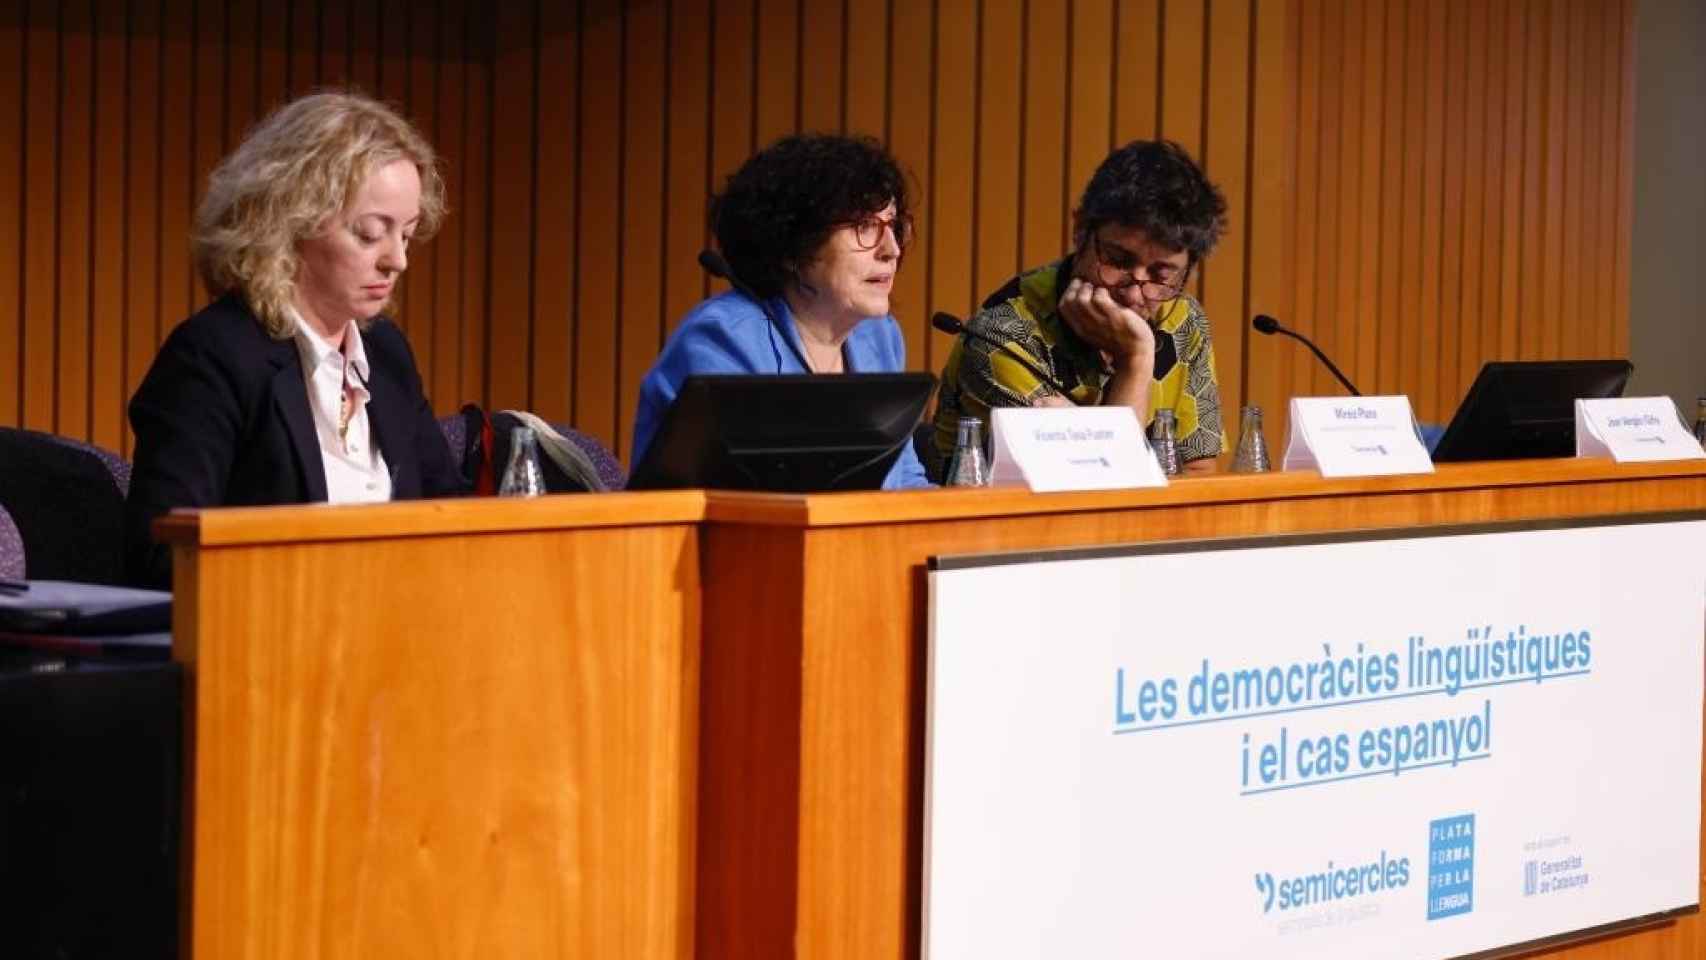 La vicepresidenta de la Plataforma per la Llengua, Mireia Plana, en el seminario 'Las democracias lingüísticas y el caso español'